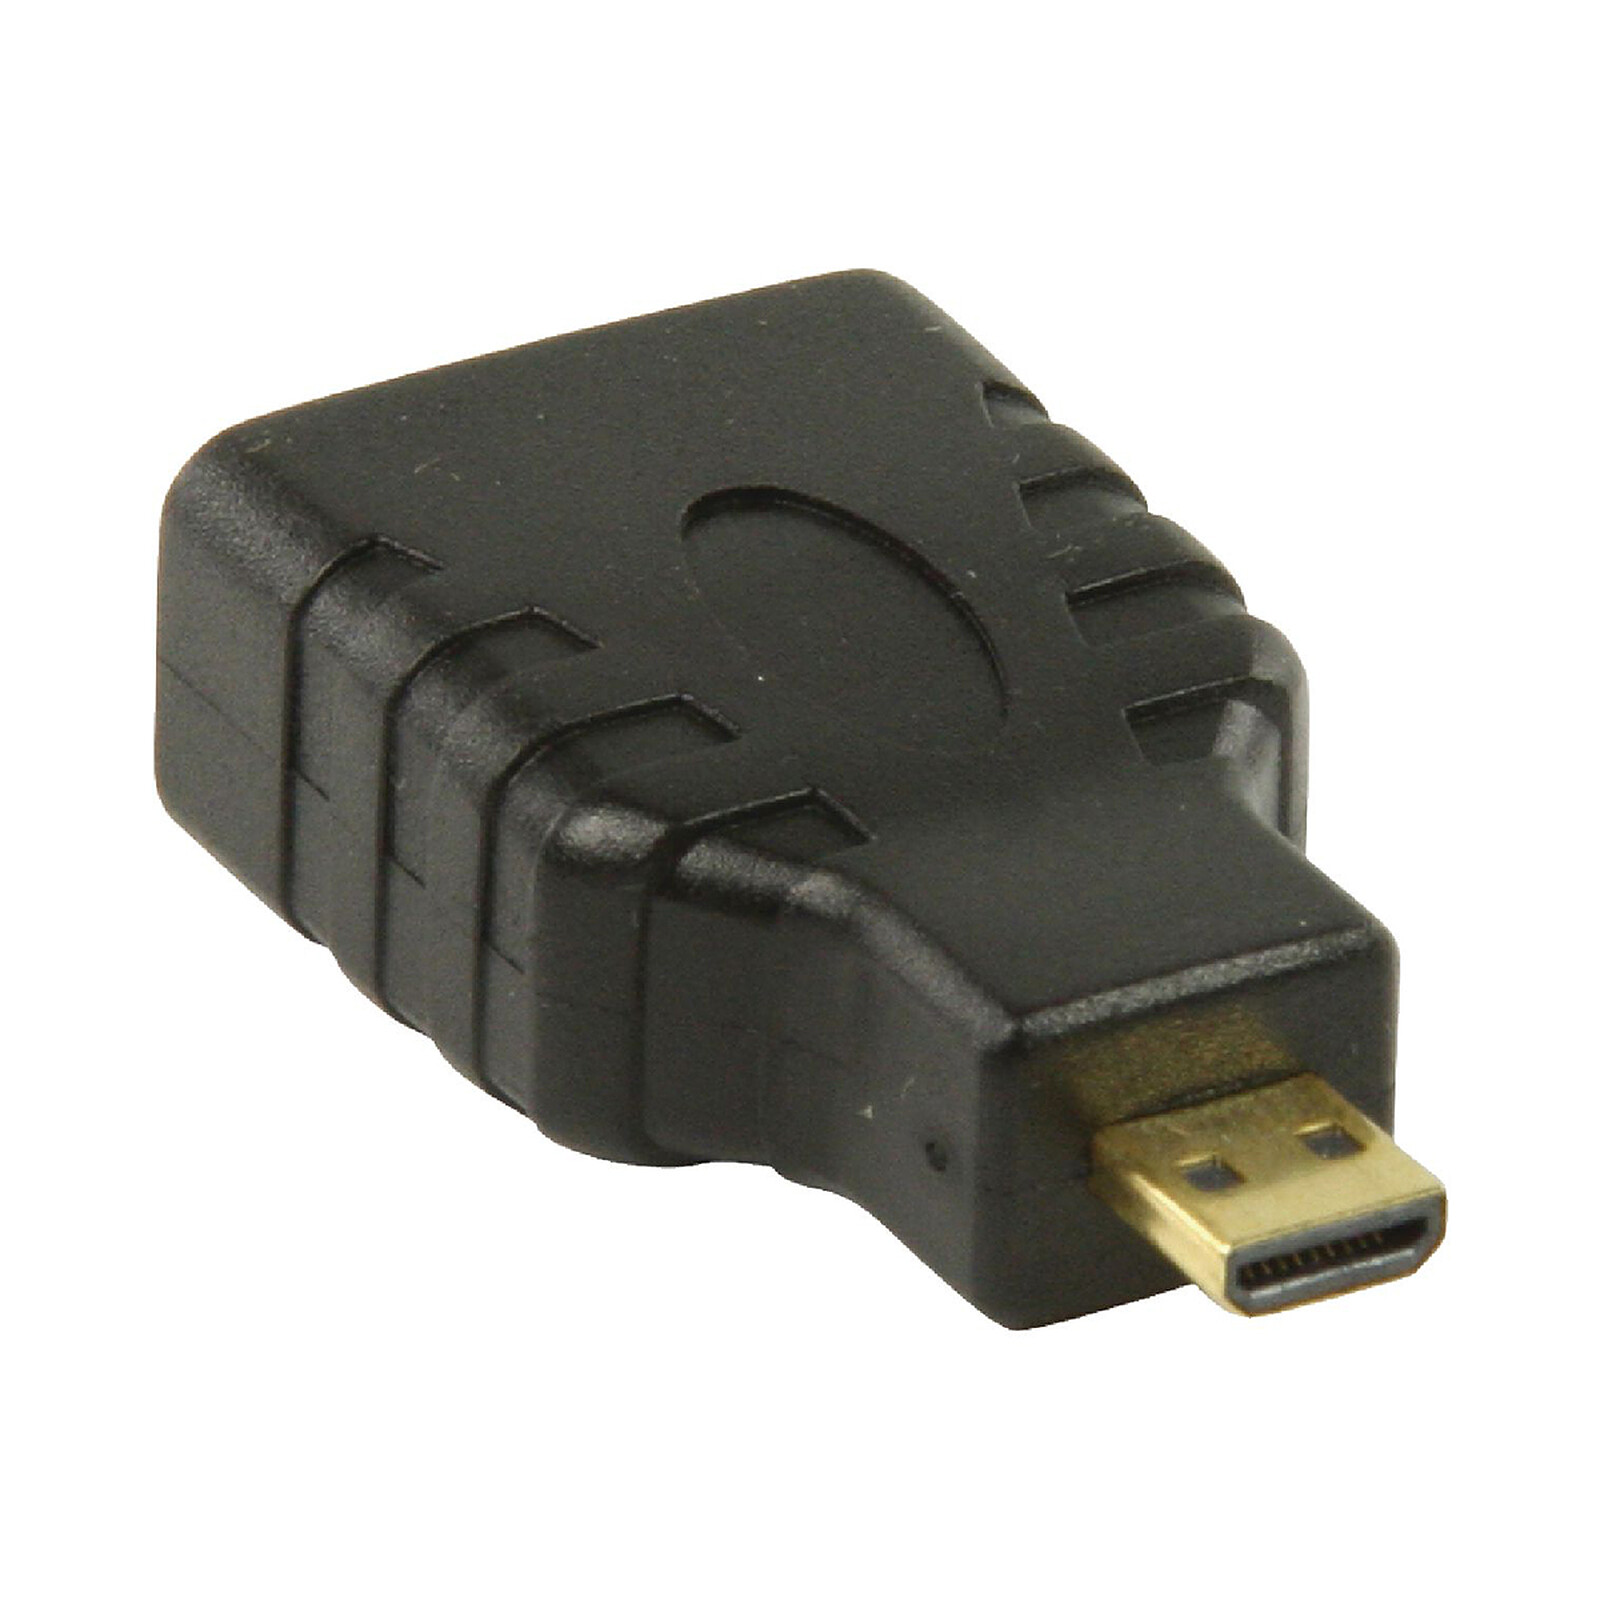 Alargador de HDMI macho/hembra (chapado en oro) - (2 metros) - HDMI - LDLC